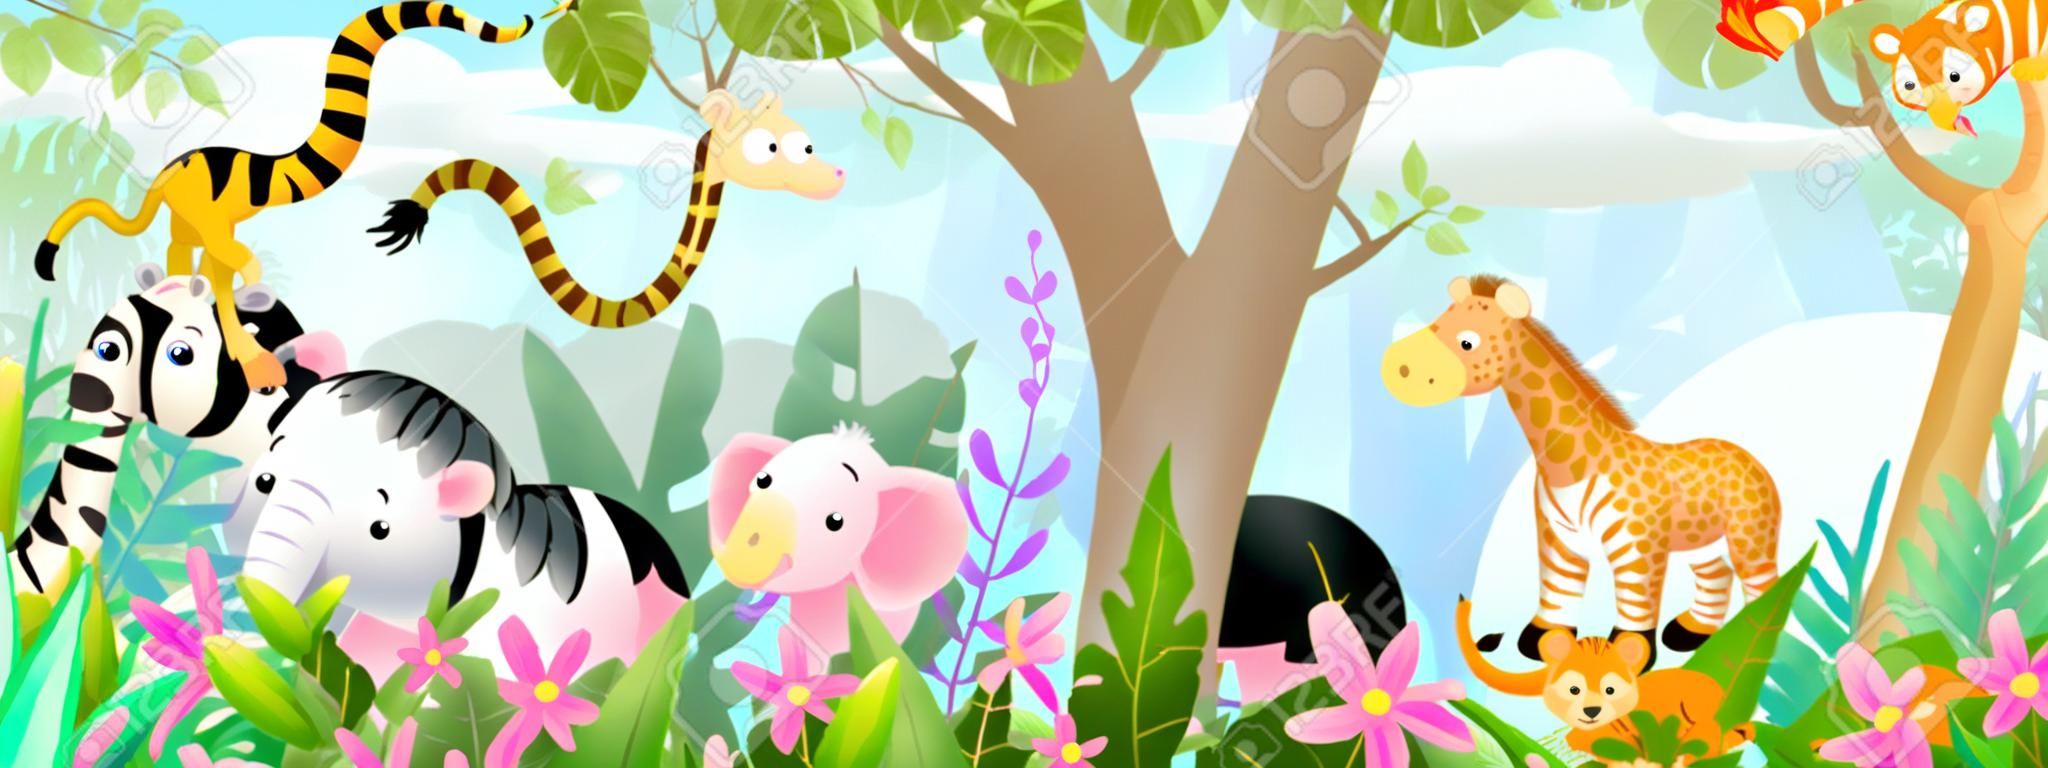 Enfants animaux dans la jungle amis mignons dans la forêt tropicale sauvage. De nombreux animaux de safari ou de zoo adorables dans la nature. Panorama horizontal pour enfants et enfants, illustration d'art vectoriel.